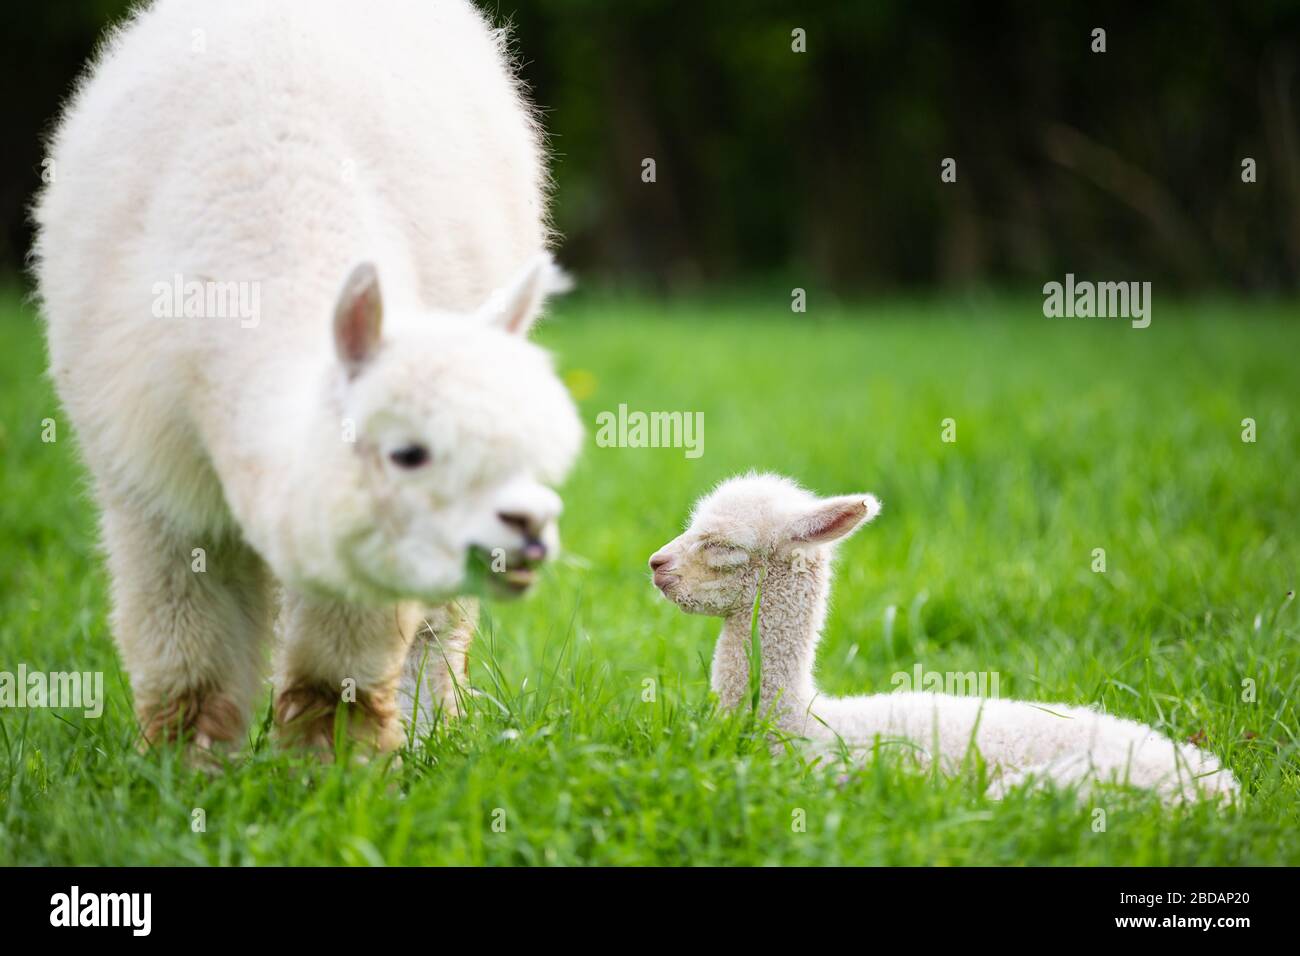 Joven Alpaca con madre en un prado, mamífero sudamericano Foto de stock